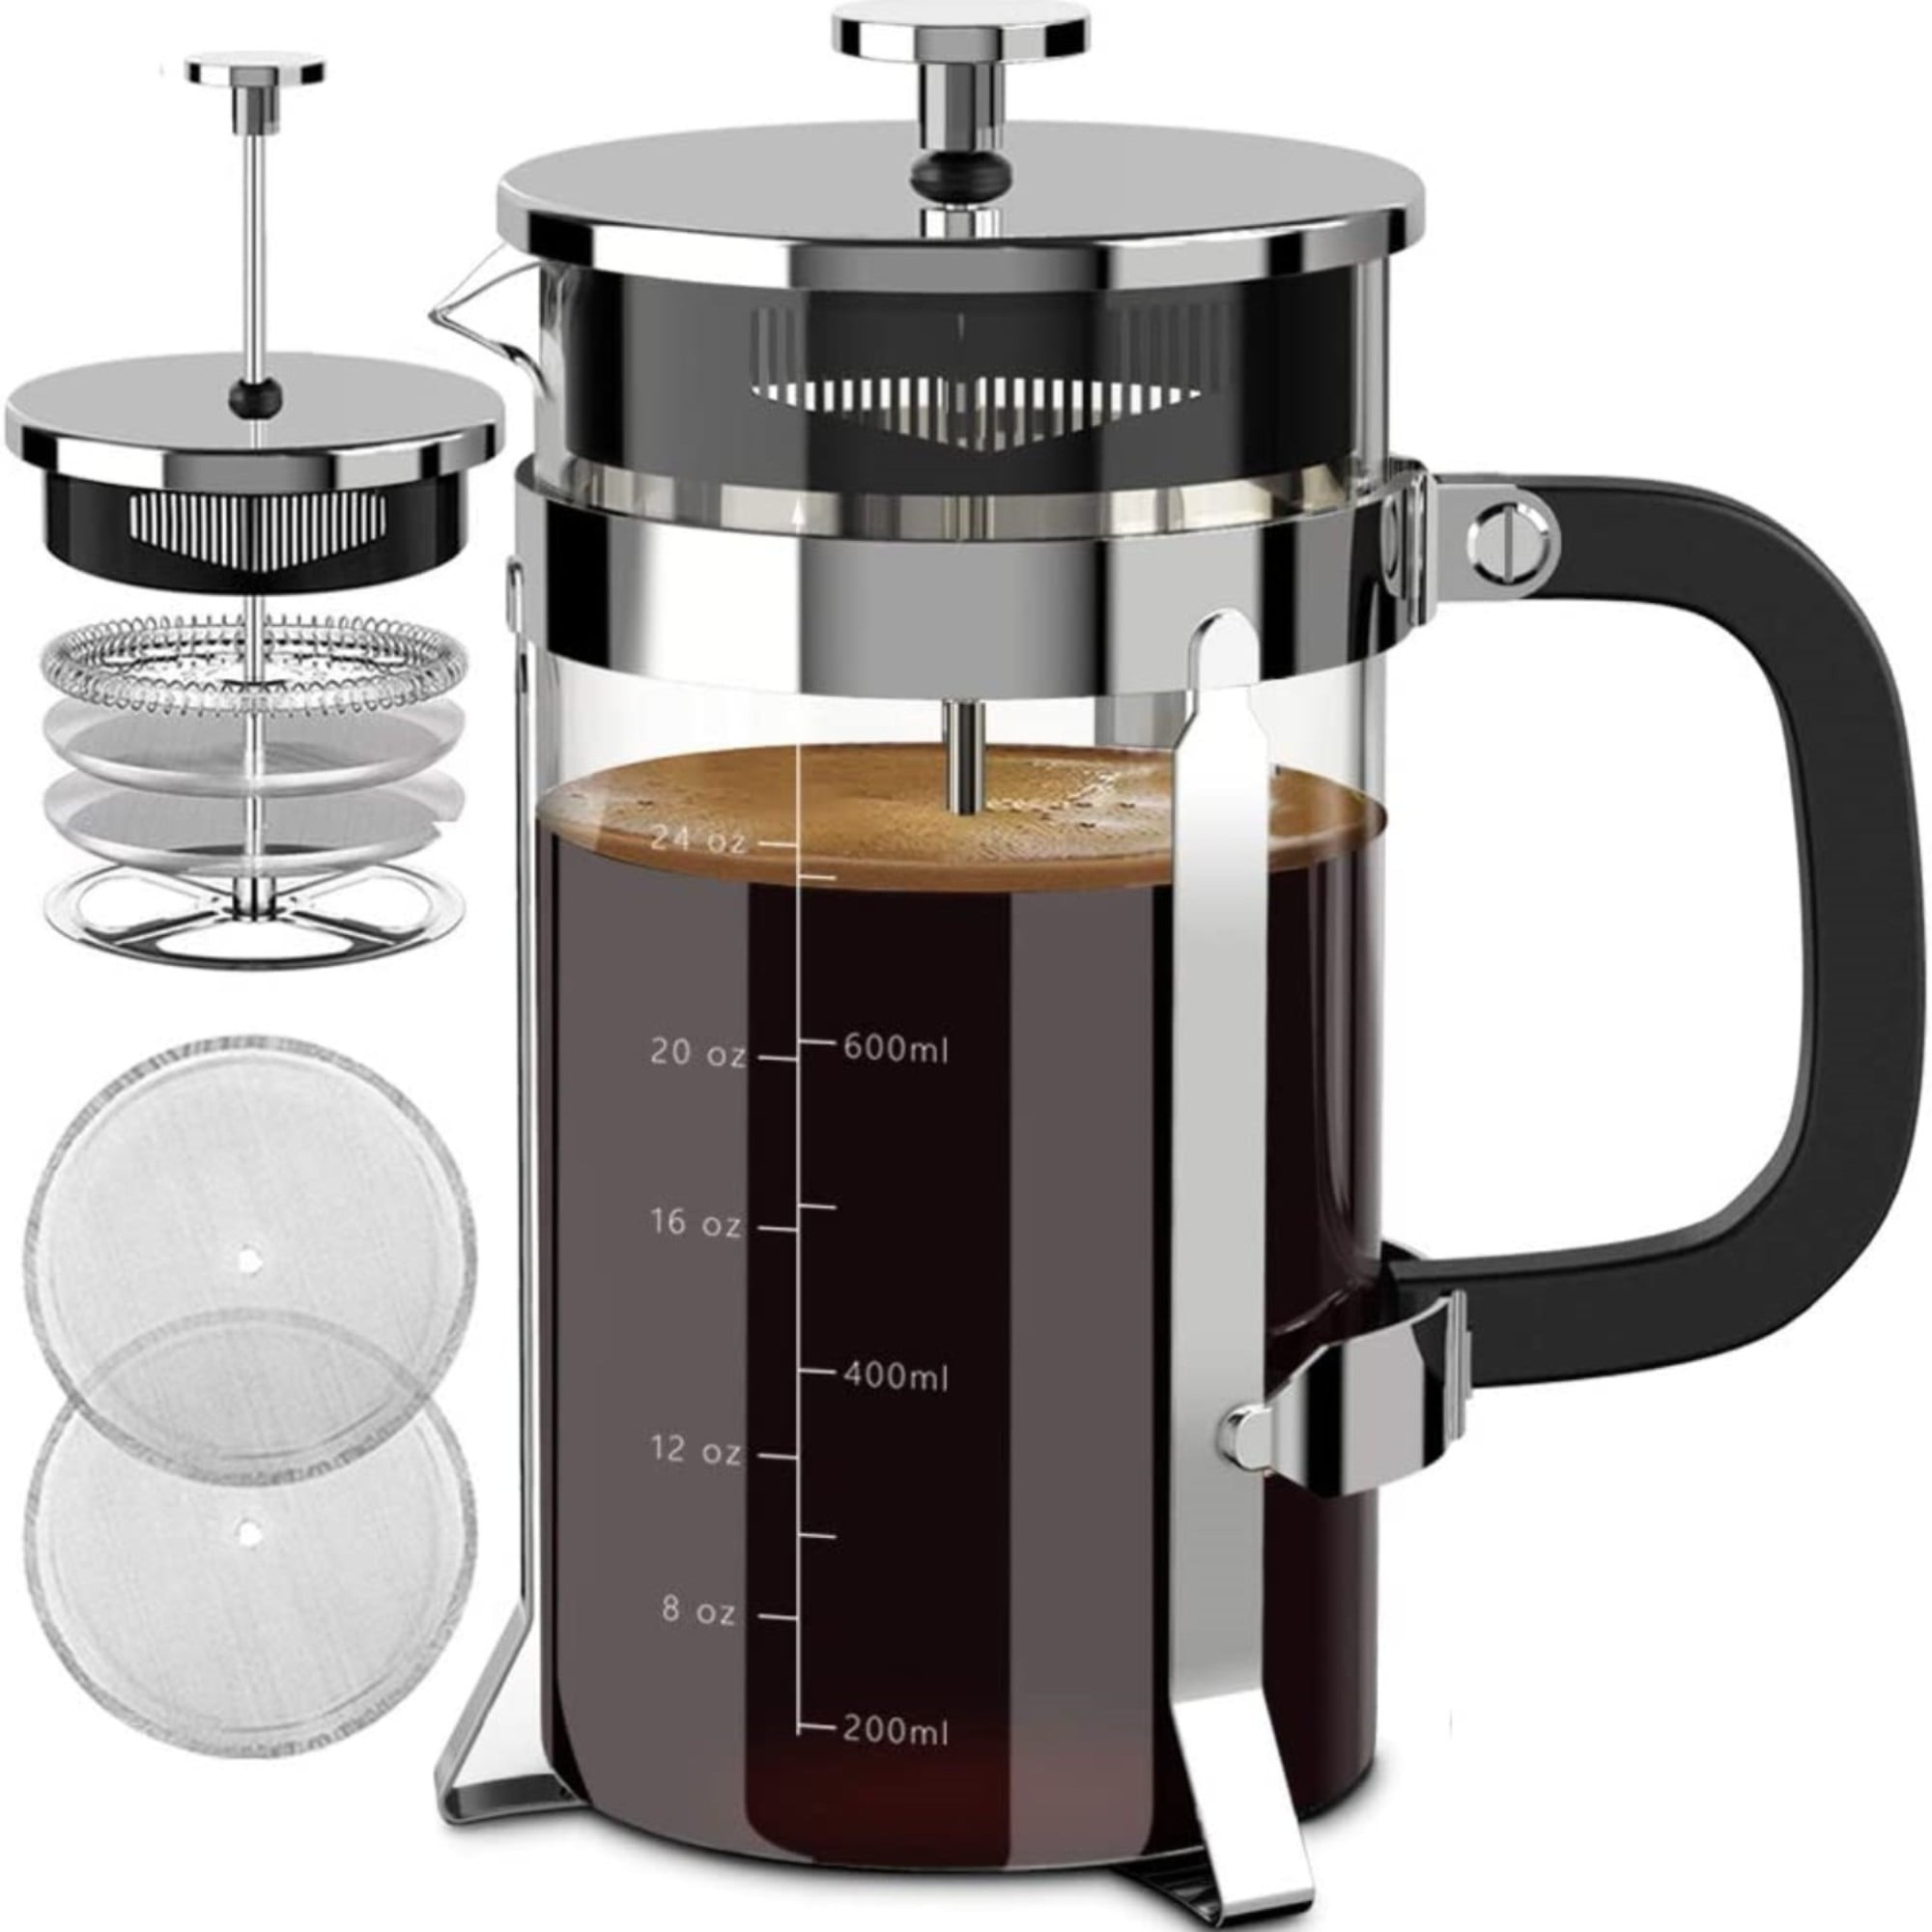 AeroPress Original Single Cup Coffee Maker, 3-in-1 American, French Press &  Espresso Style, Gray